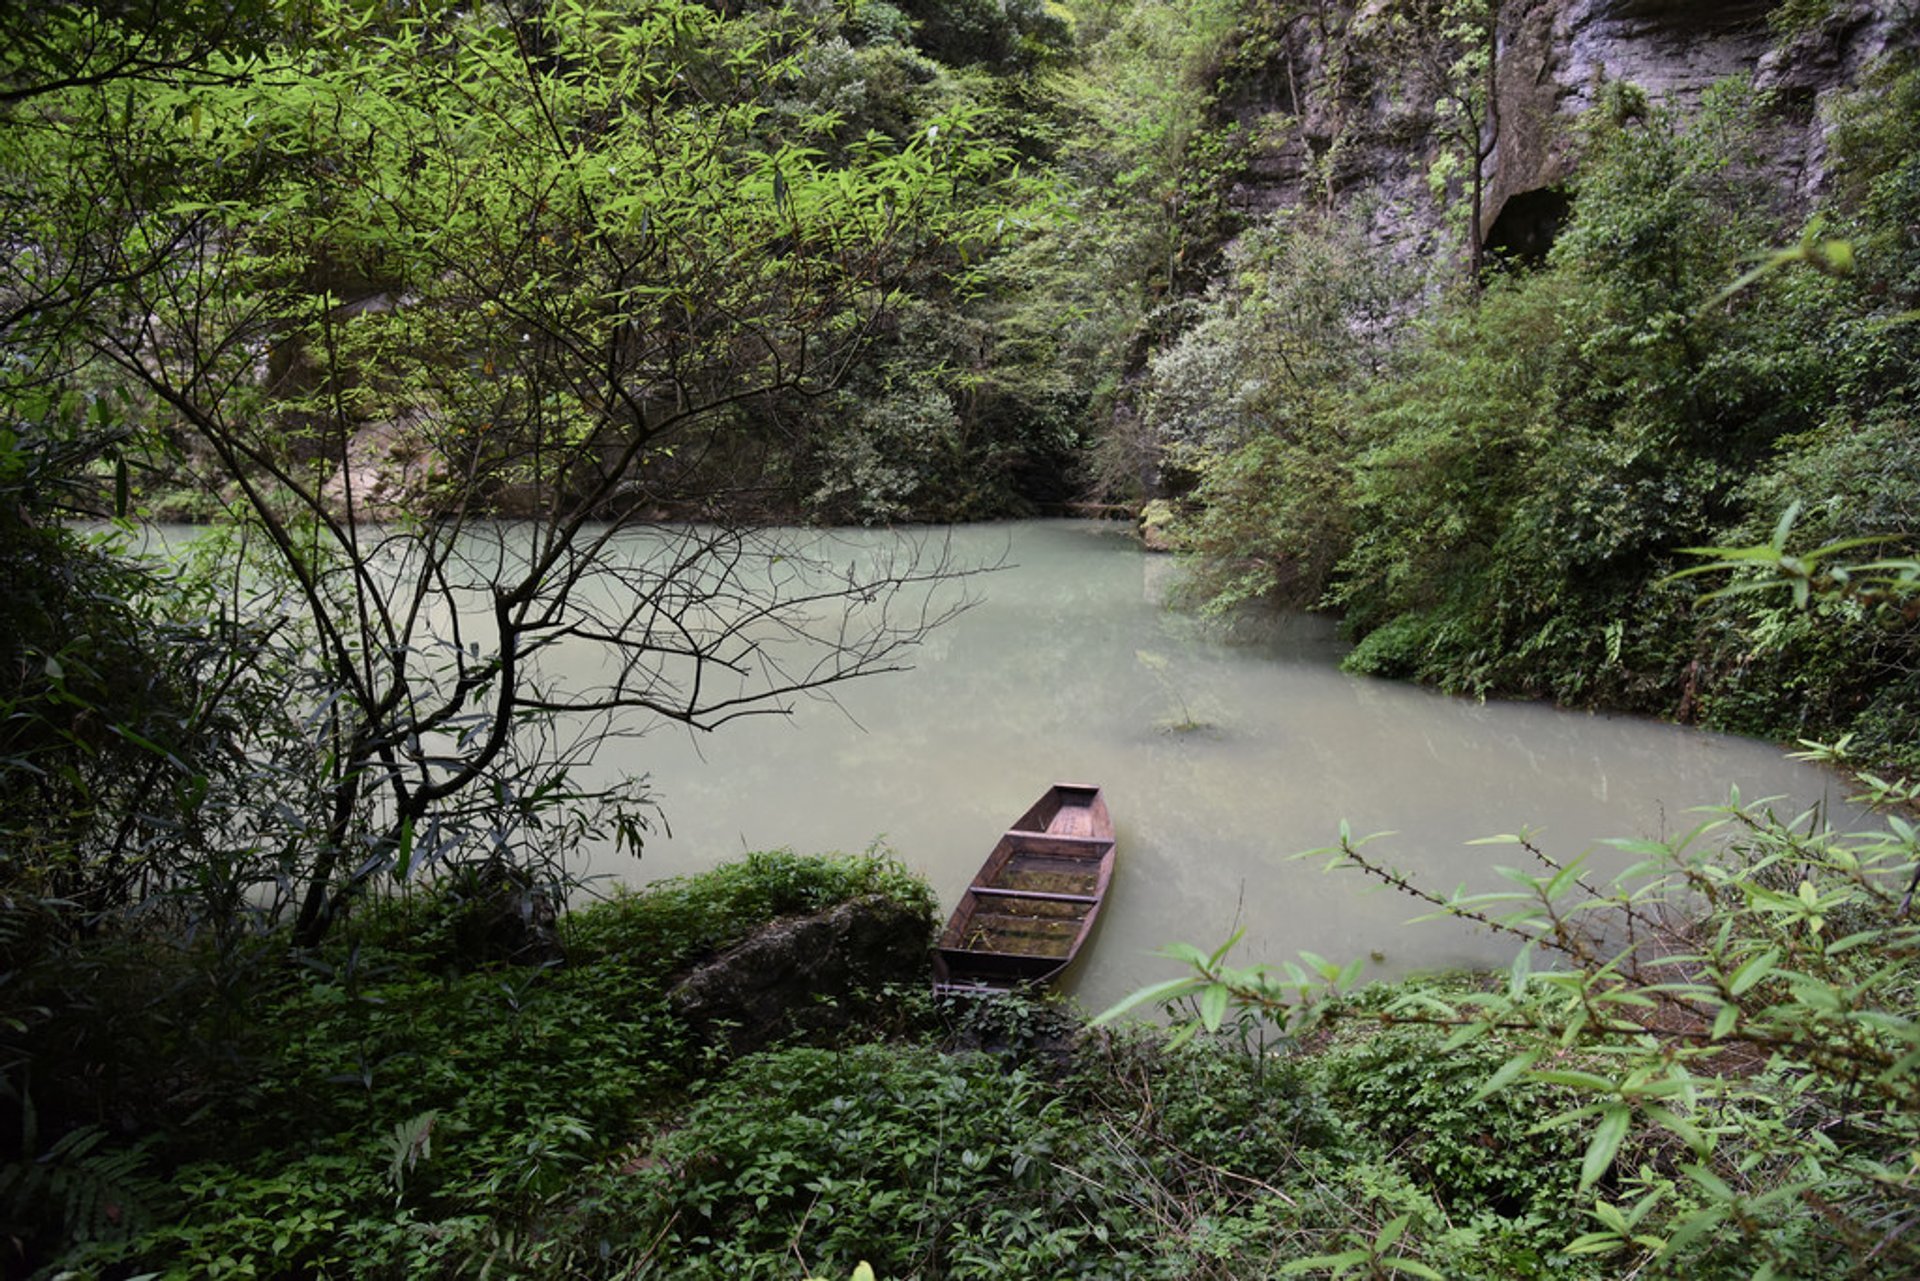 Parque forestal nacional de Zhangjiajie